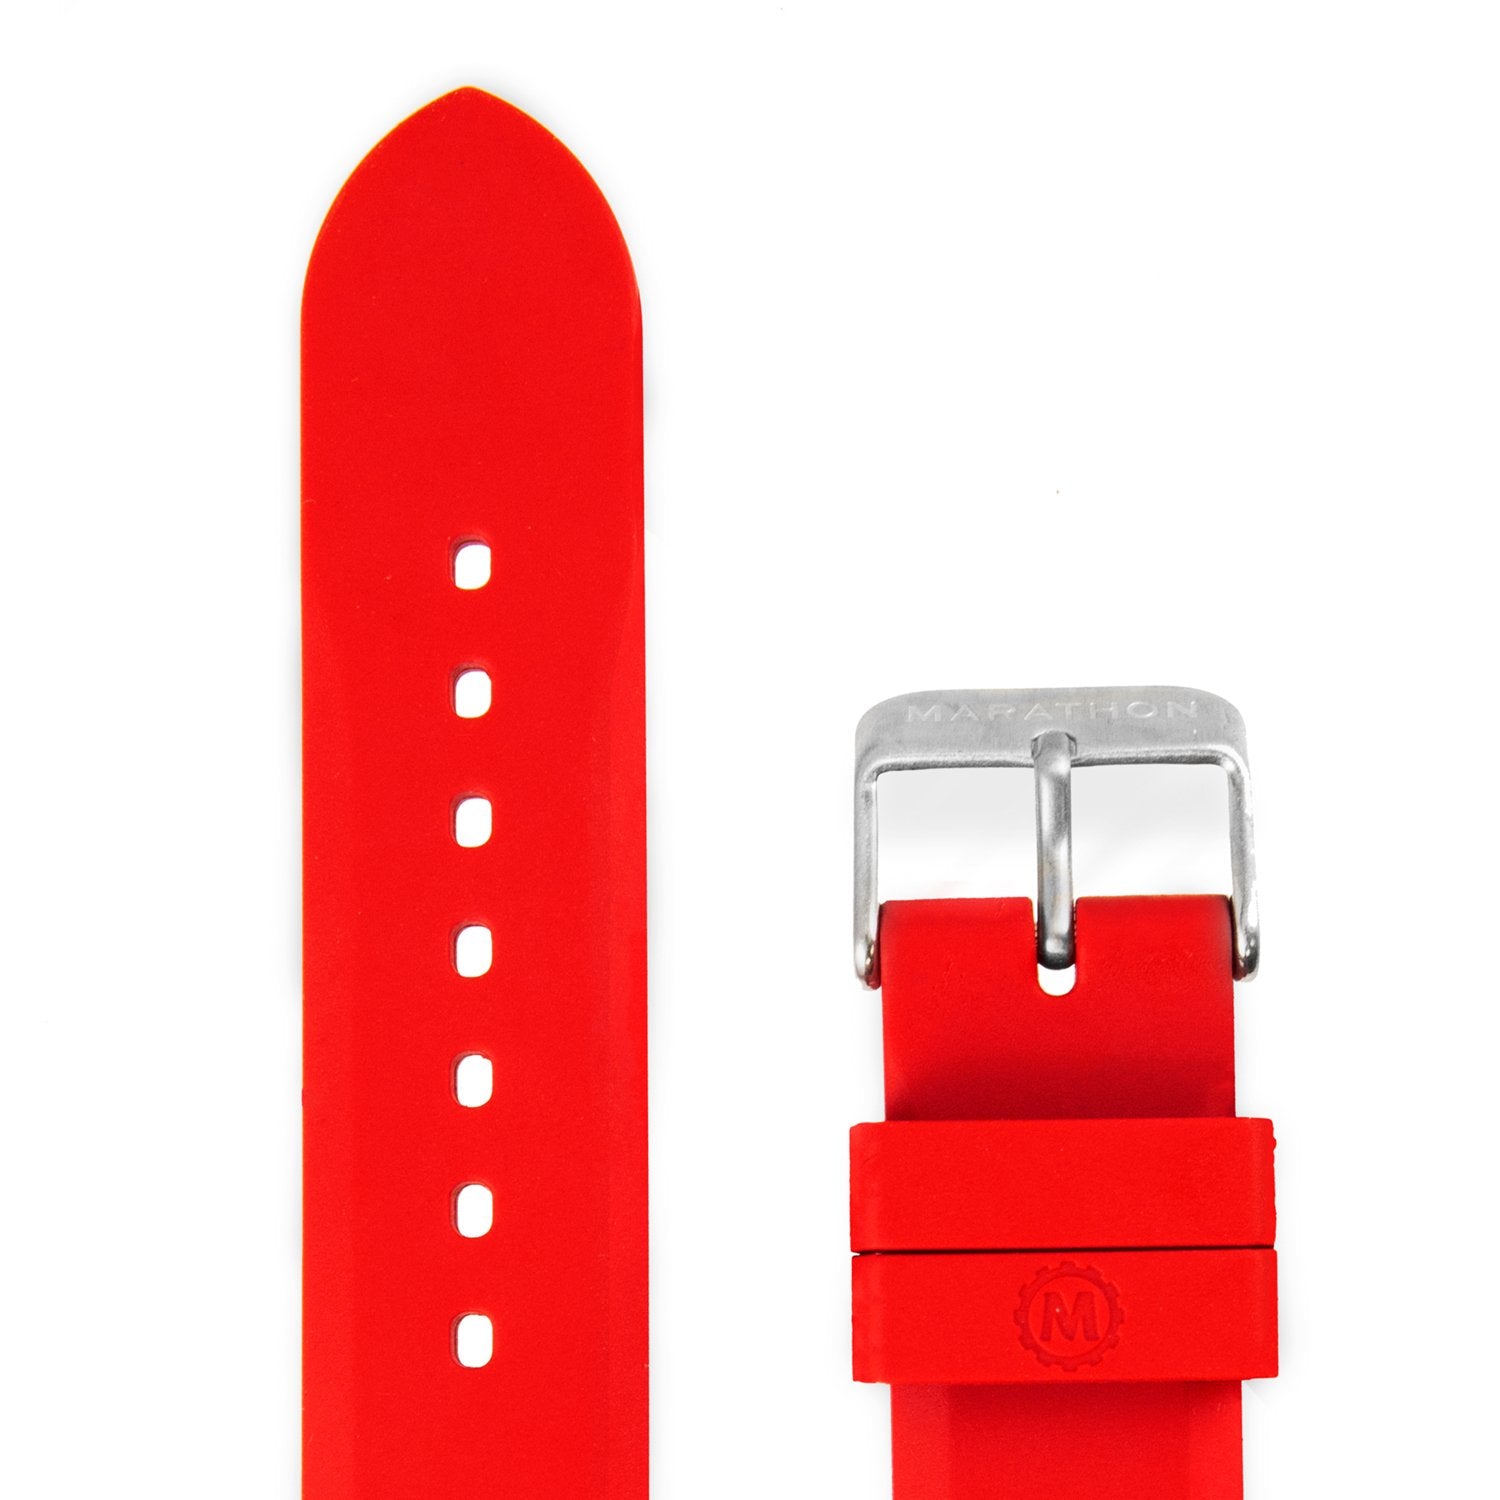 20 mm vulkanisierte Gummi-Taucheruhrenarmbänder in verschiedenen Farben – Marathonuhr